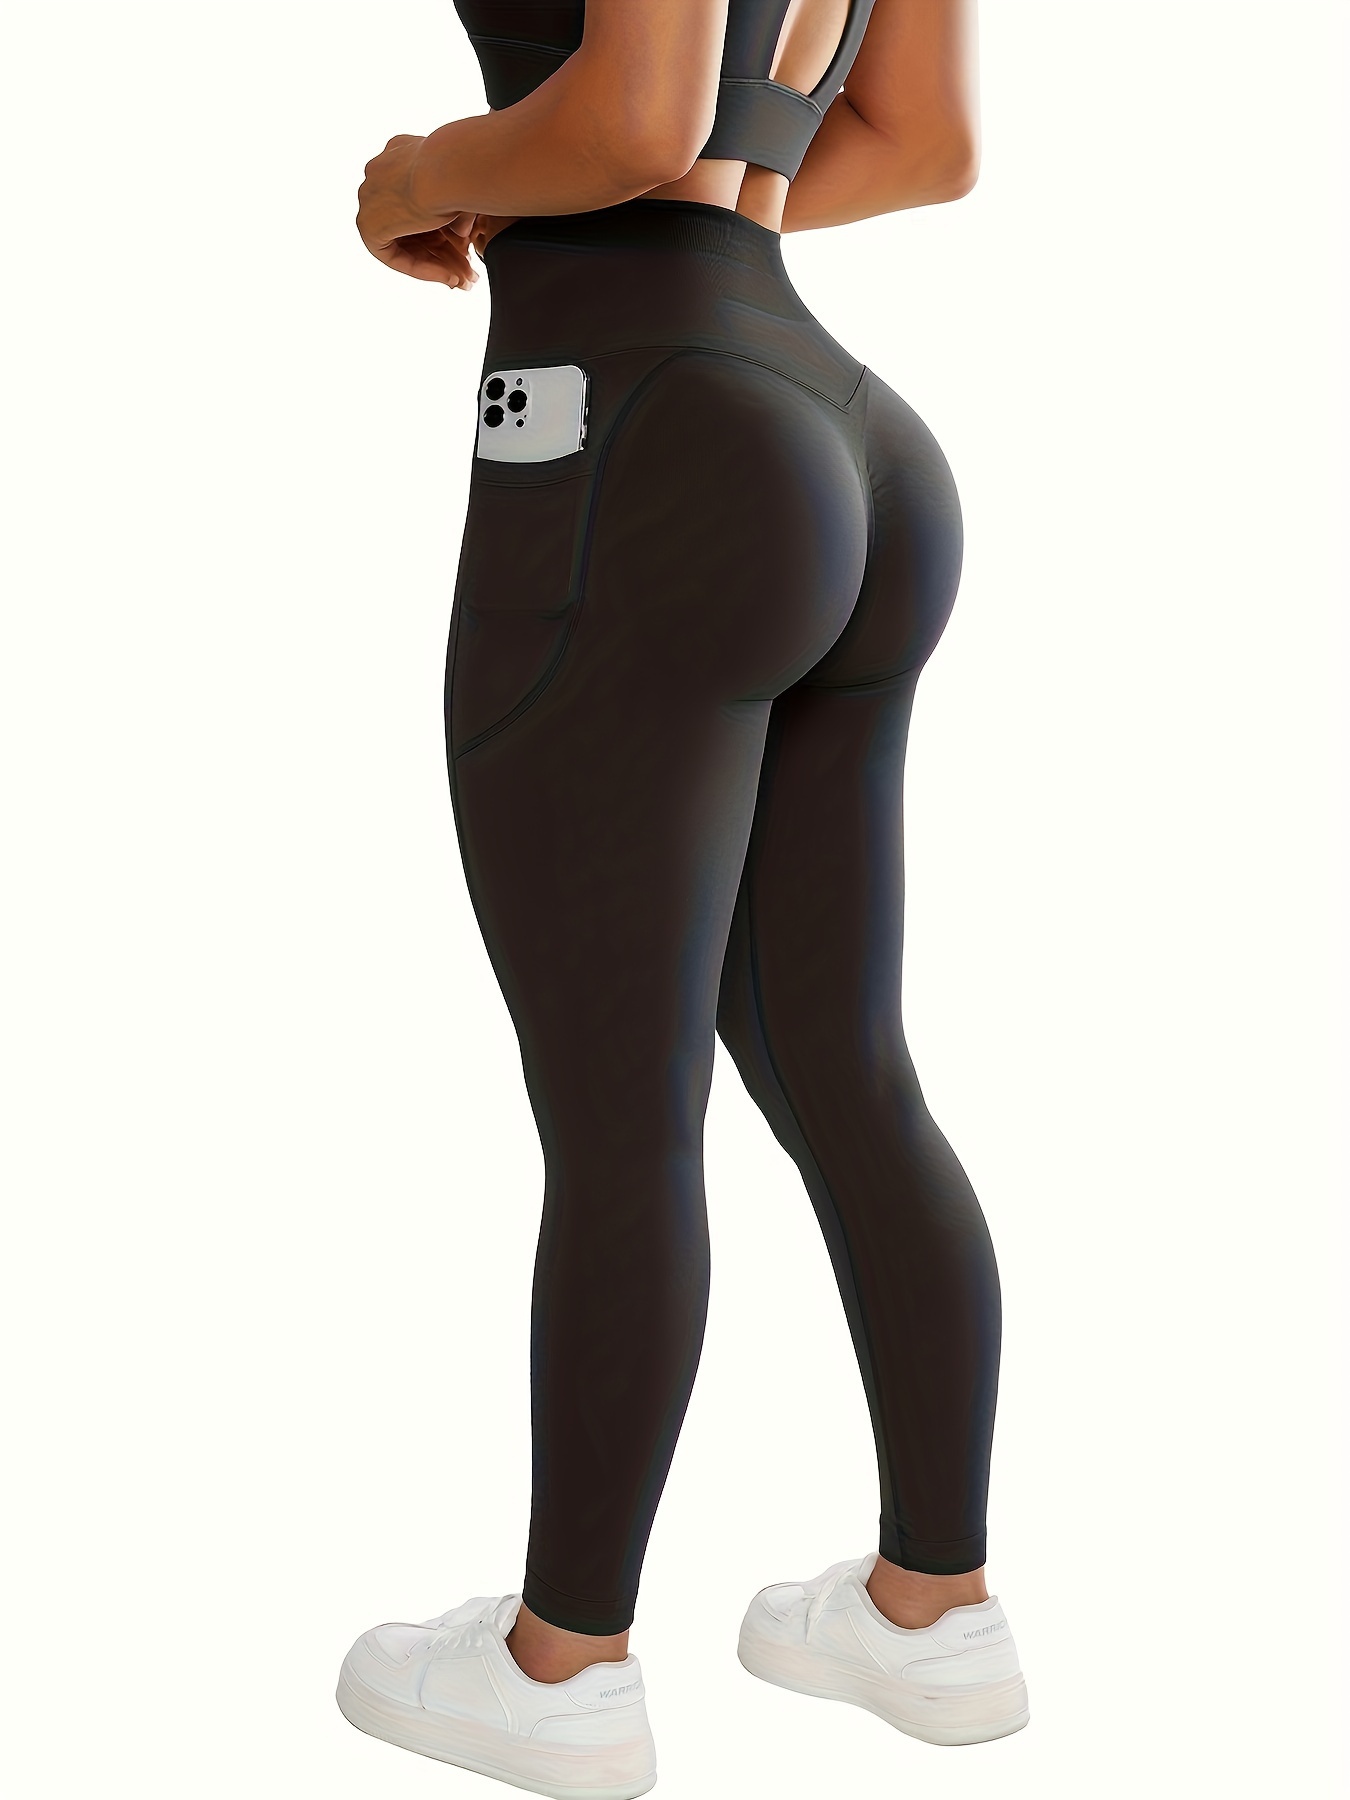 Buy RXRXCOCO Women's Scrunch Leggings Butt Lift high Waist